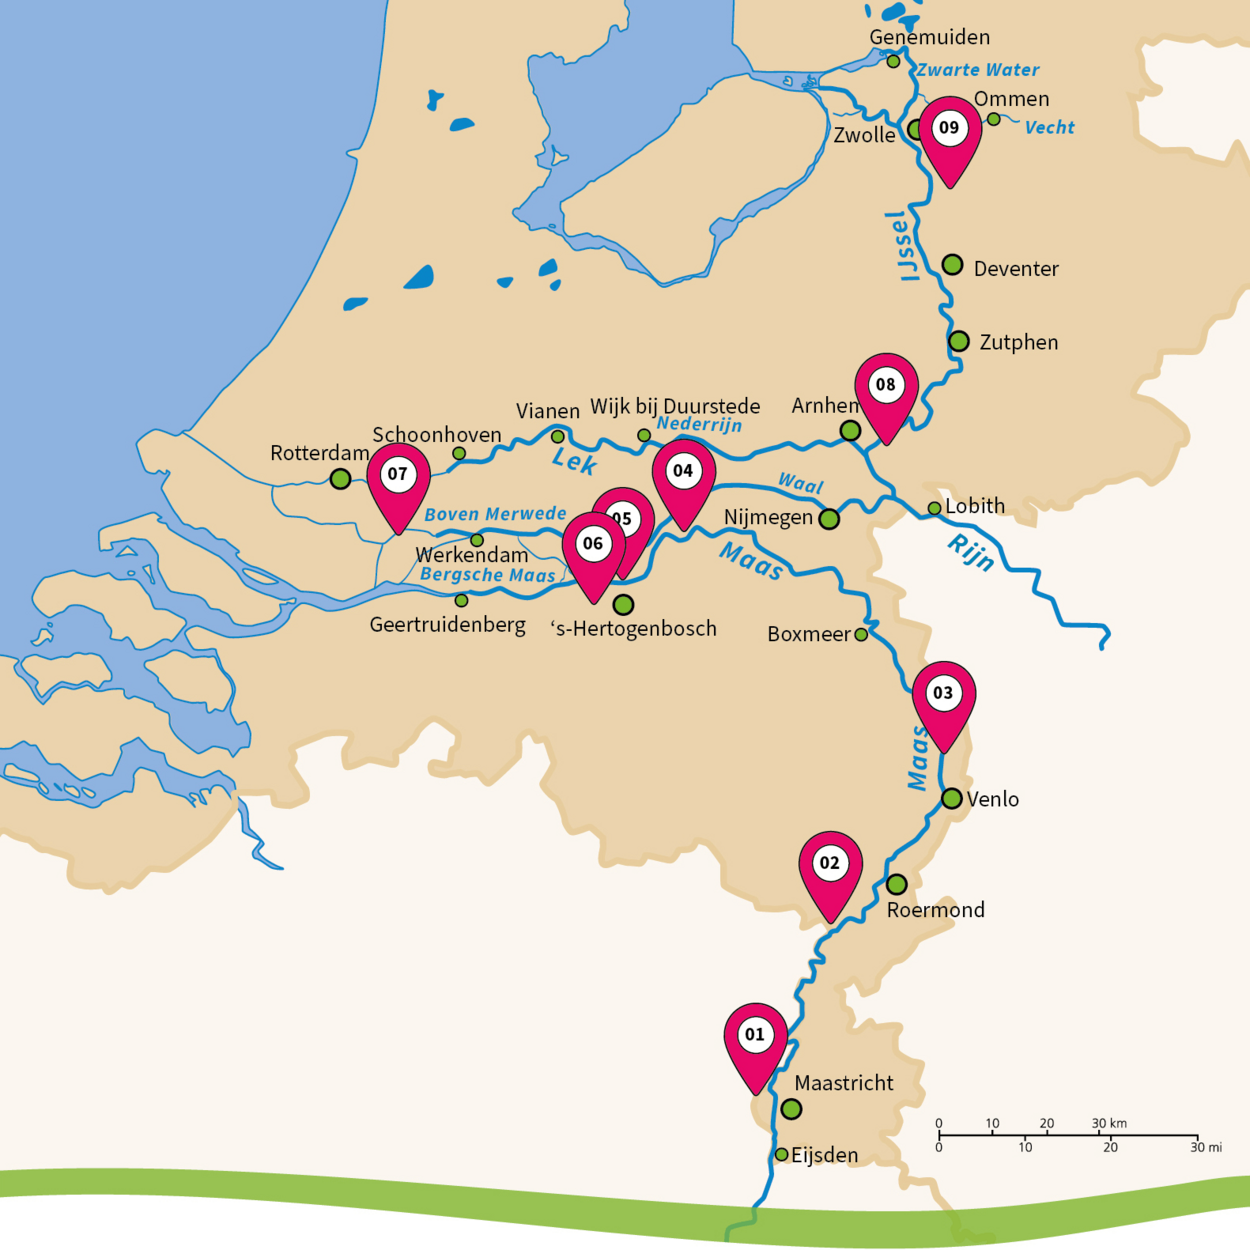 Interactieve overzichtskaart van de pilots van Integraal Riviermanagement in het Nederlande riviergebied